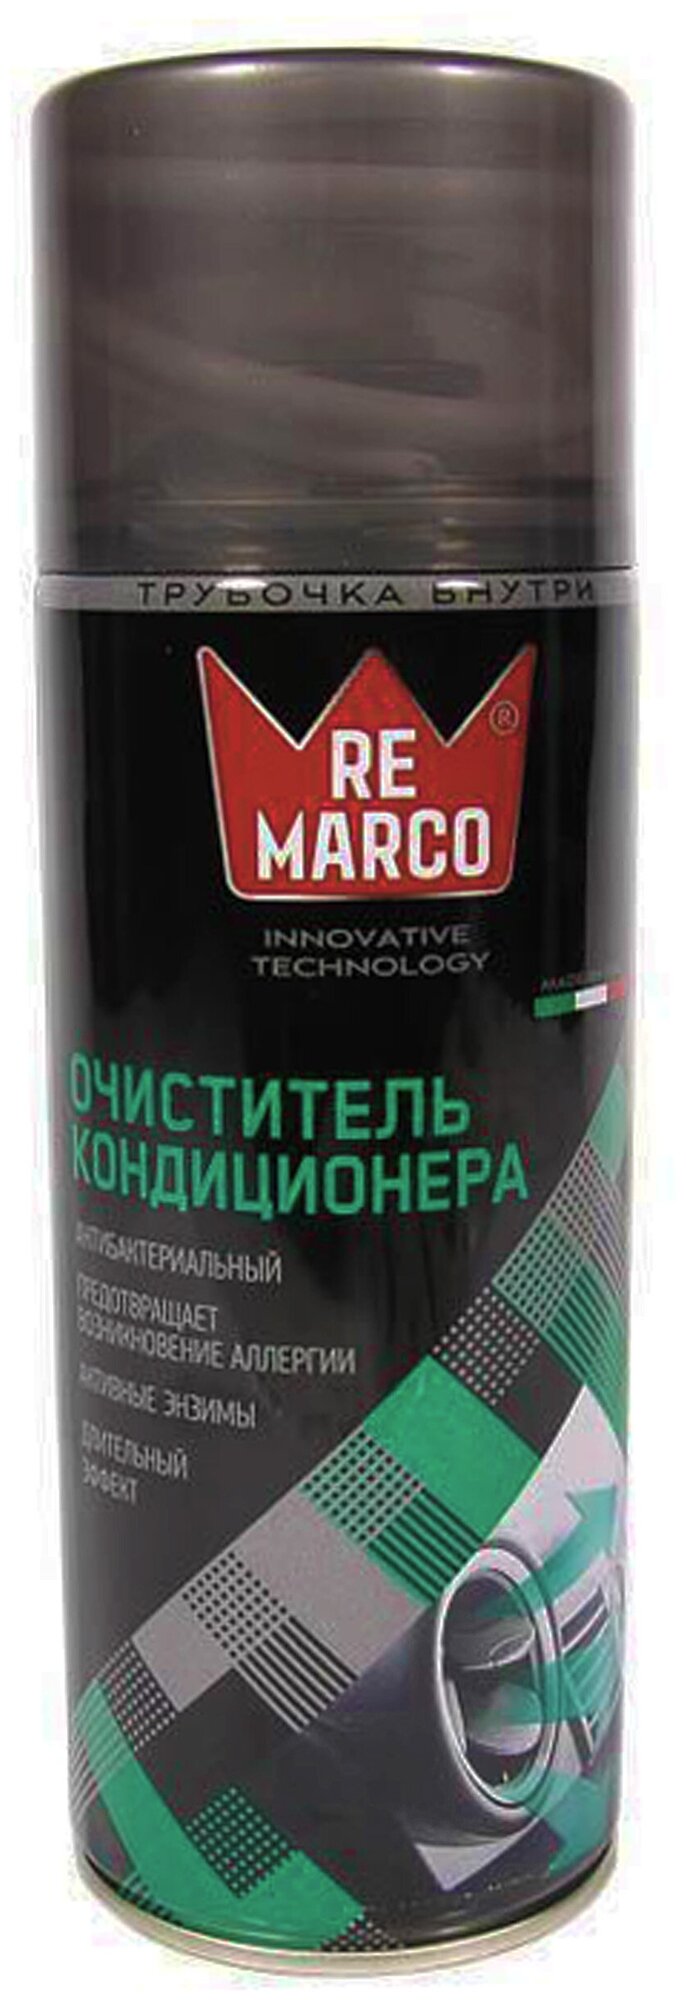 Очиститель кондиционера и системы вентиляции автомобиля (аэрозоль) клубника RE MARCO PL011strawberry 400 мл.